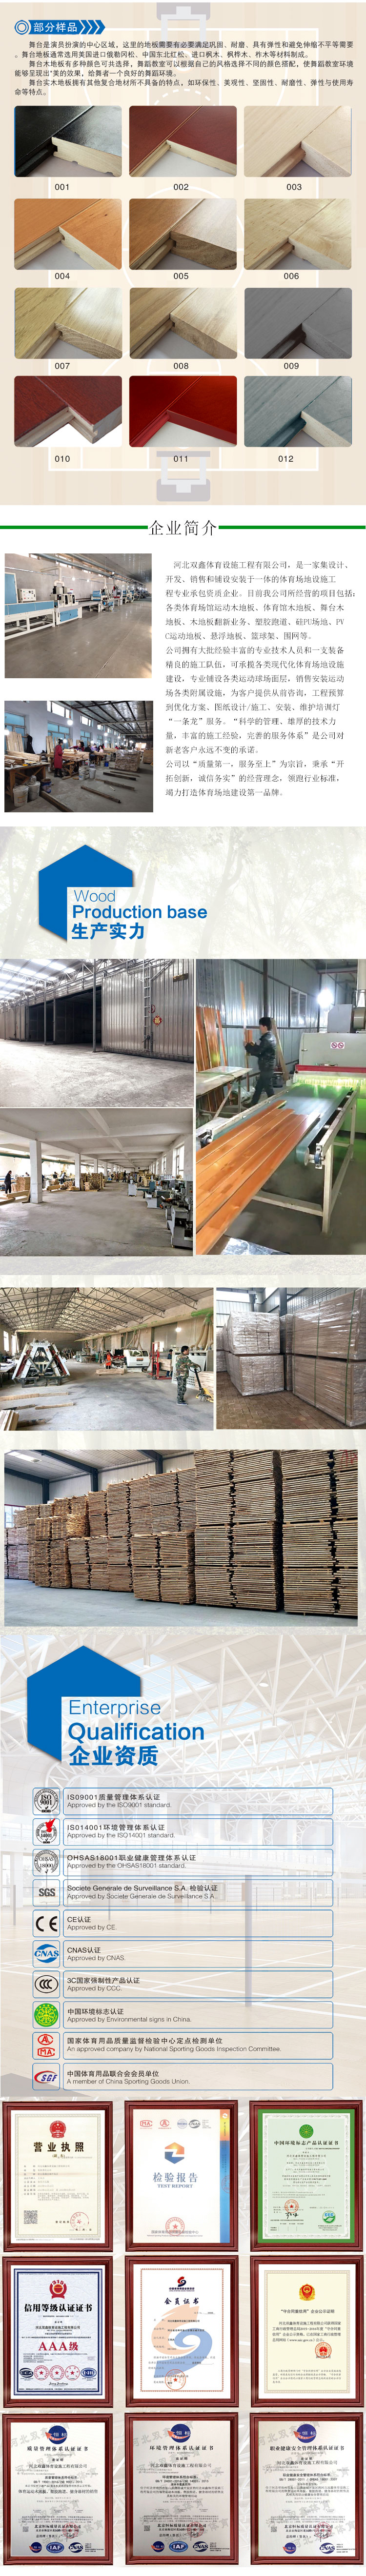 浙江义乌 体育馆地板 运动木地板 体育木地板安装